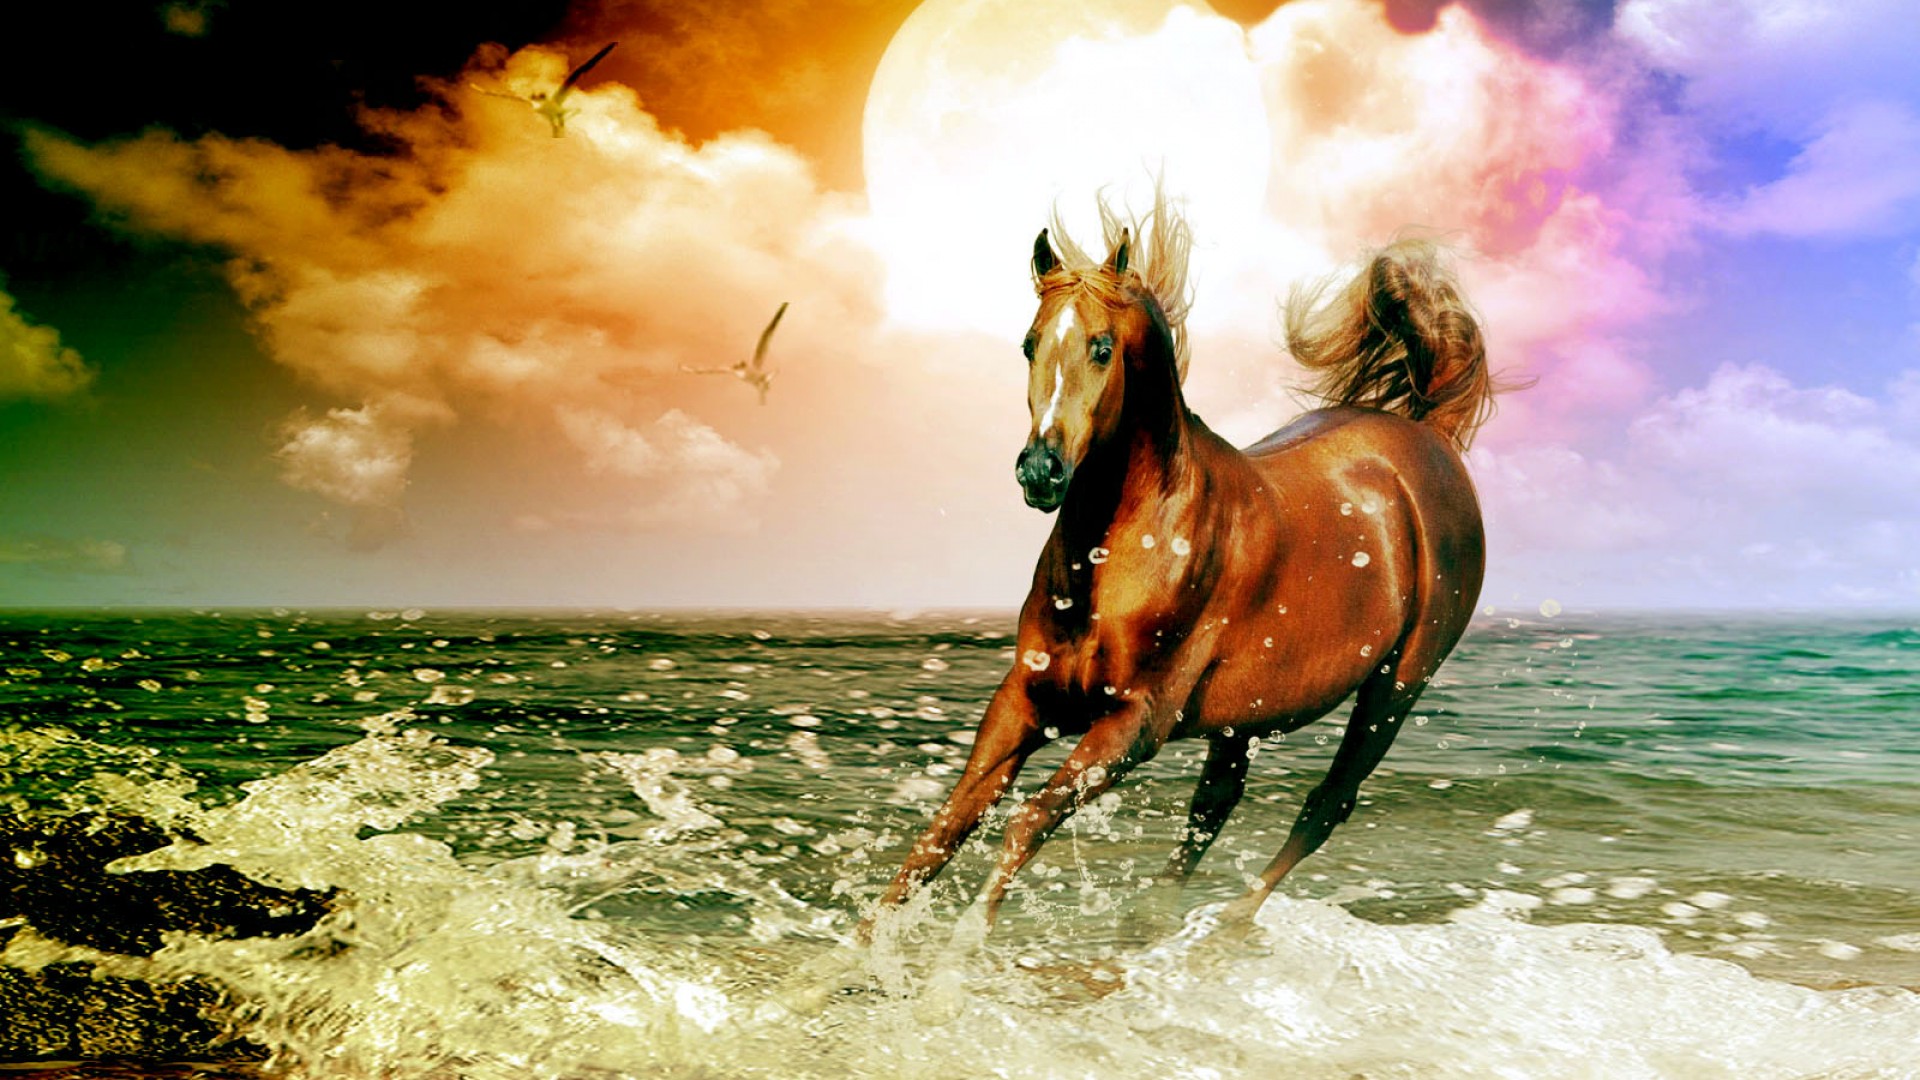 Arabian Horse Beach Desktop Wallpaper High Quality